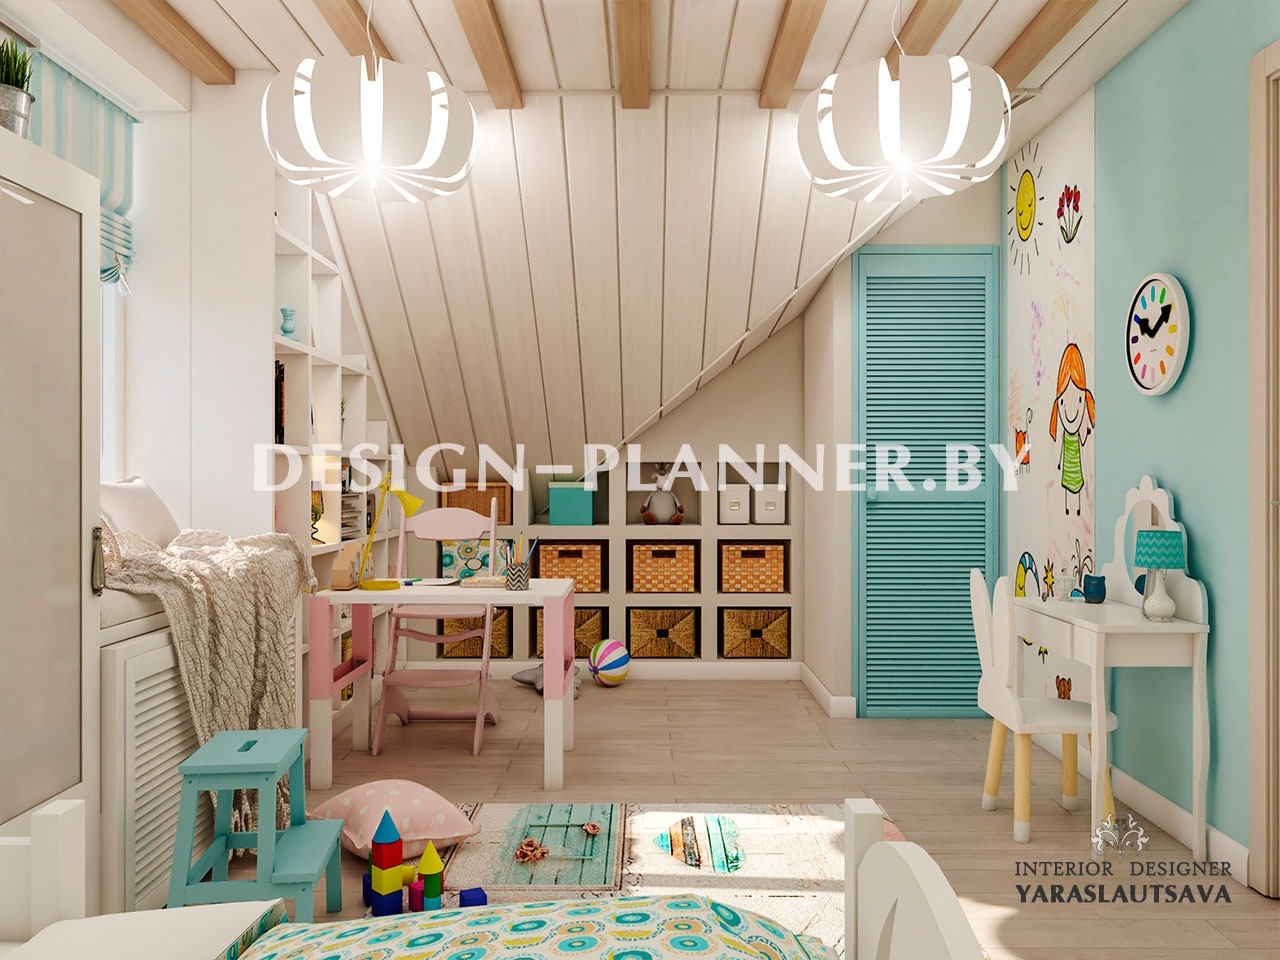 Все потолки детской комнаты обшиты натуральным материалом "Евро Вагонка".